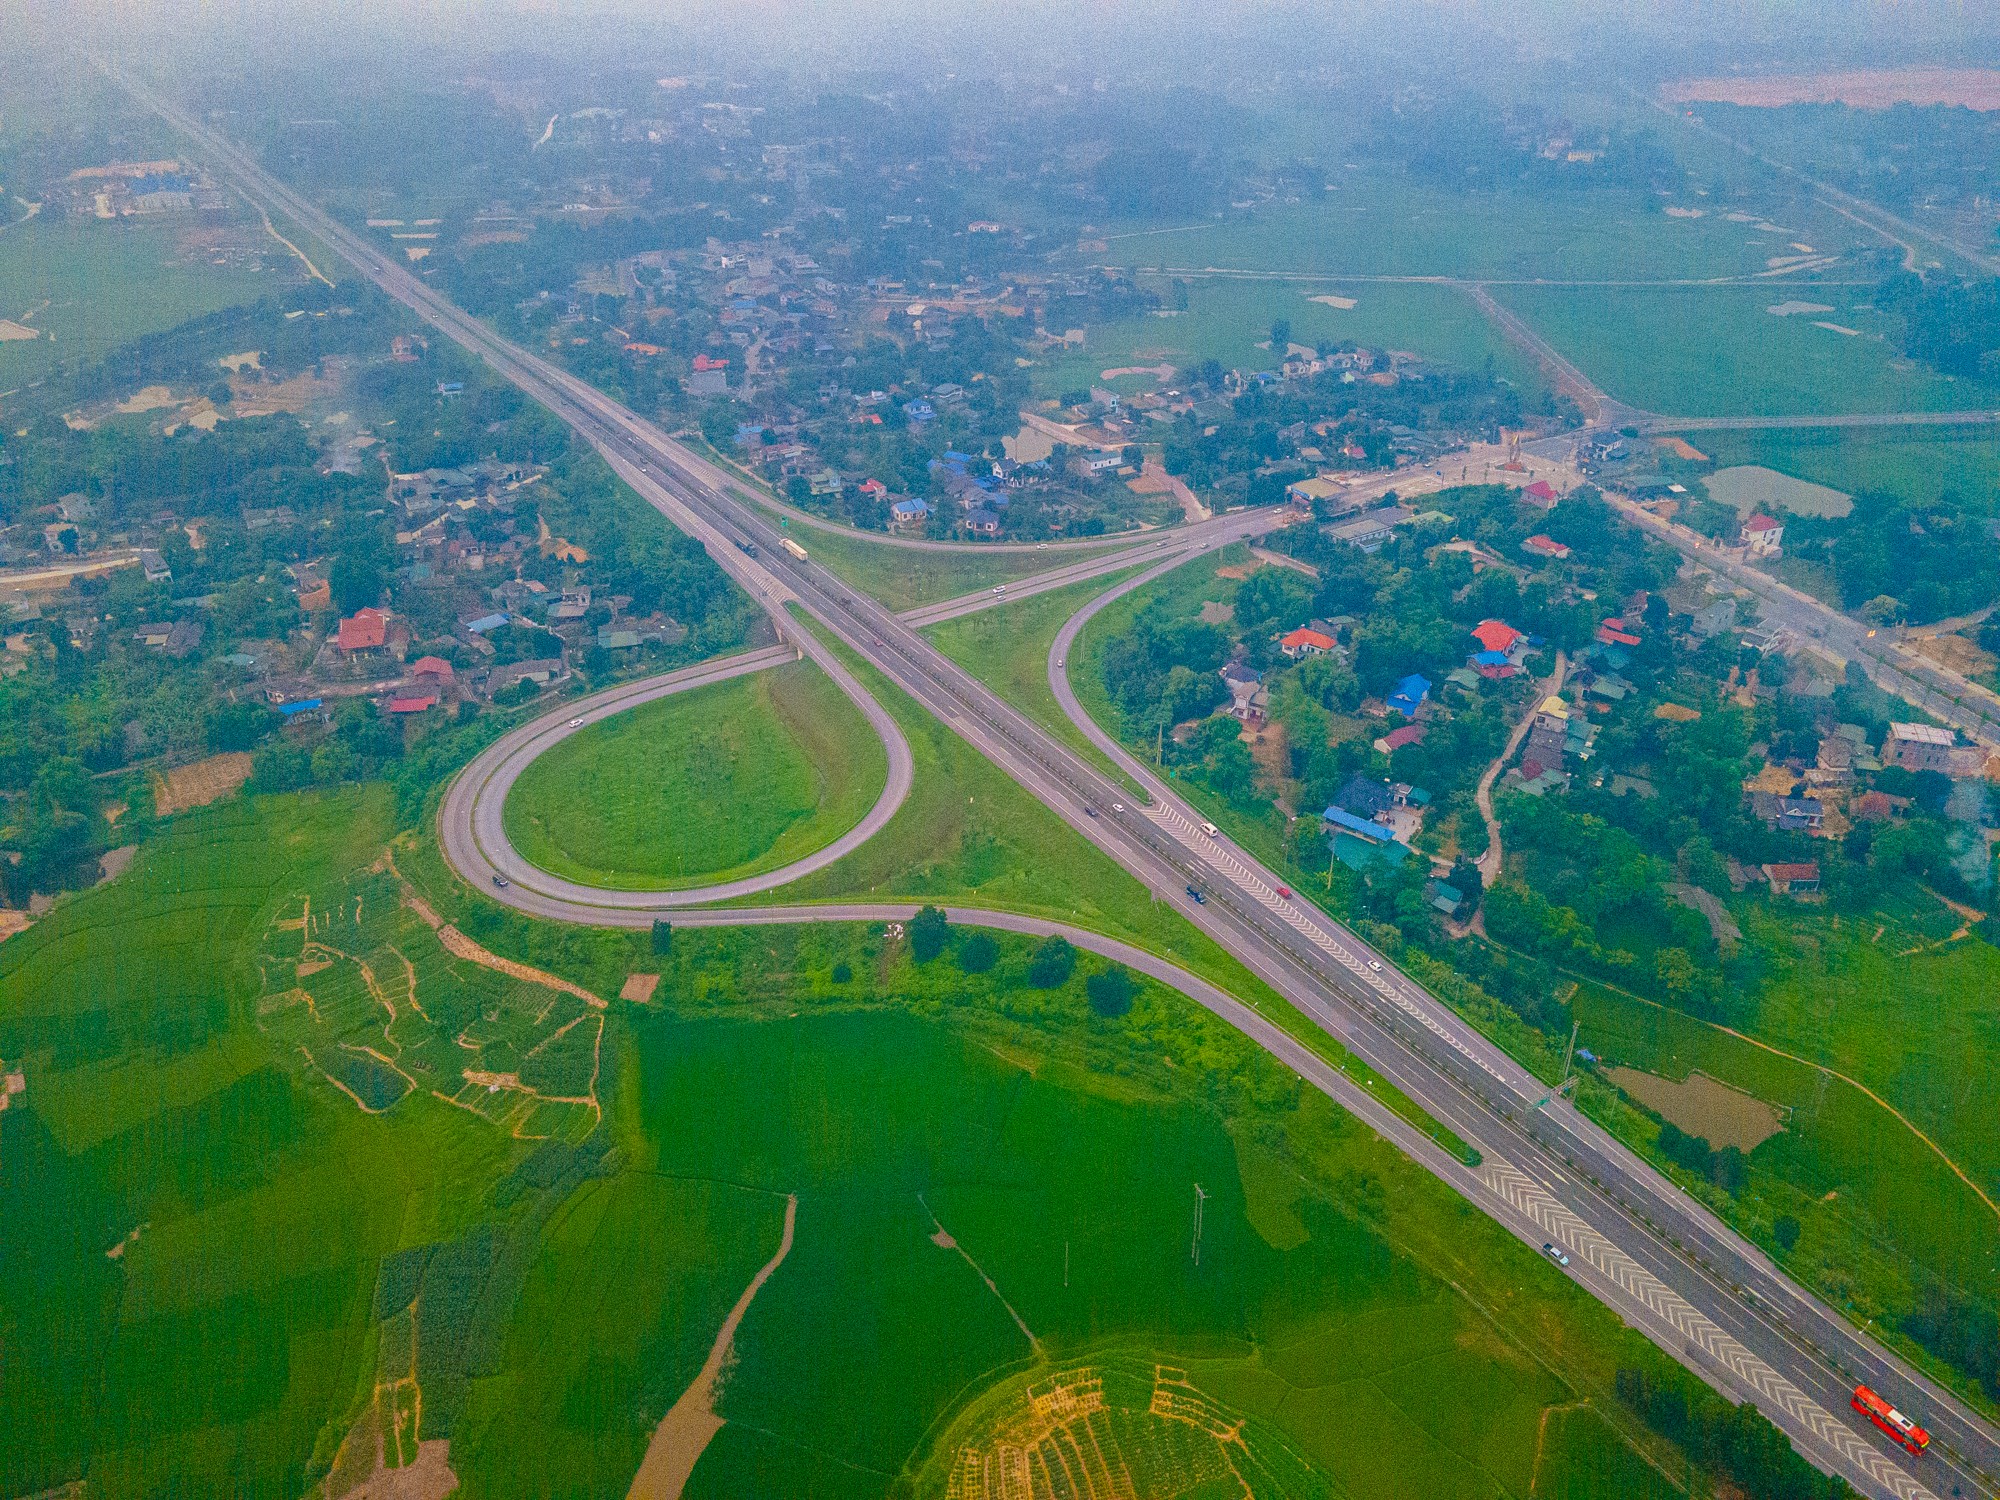 Thị xã lâu đời nhất Việt Nam là giao điểm của 4 đường cao tốc, có khu công nghiệp rộng gần bằng quận Hoàn Kiếm, sẽ lên thành phố sau vài năm nữa- Ảnh 3.